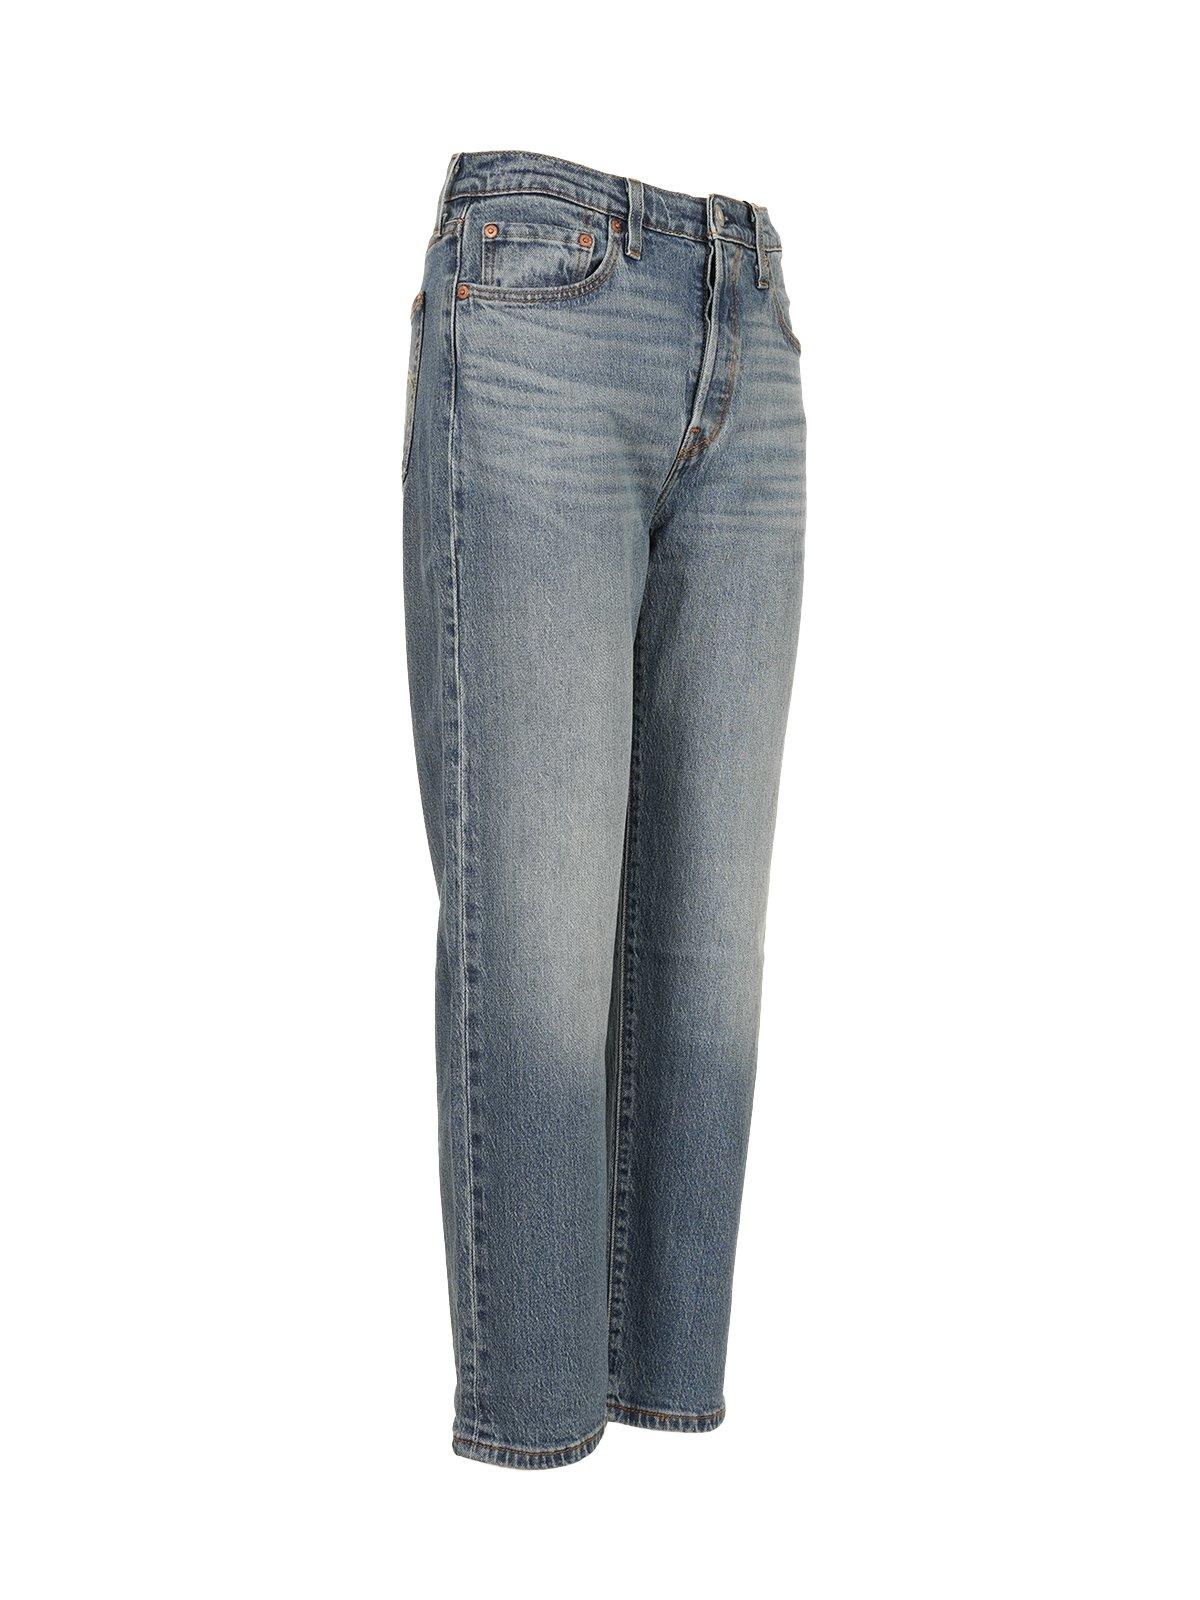 Shop Levi's 501 Crop Jeans